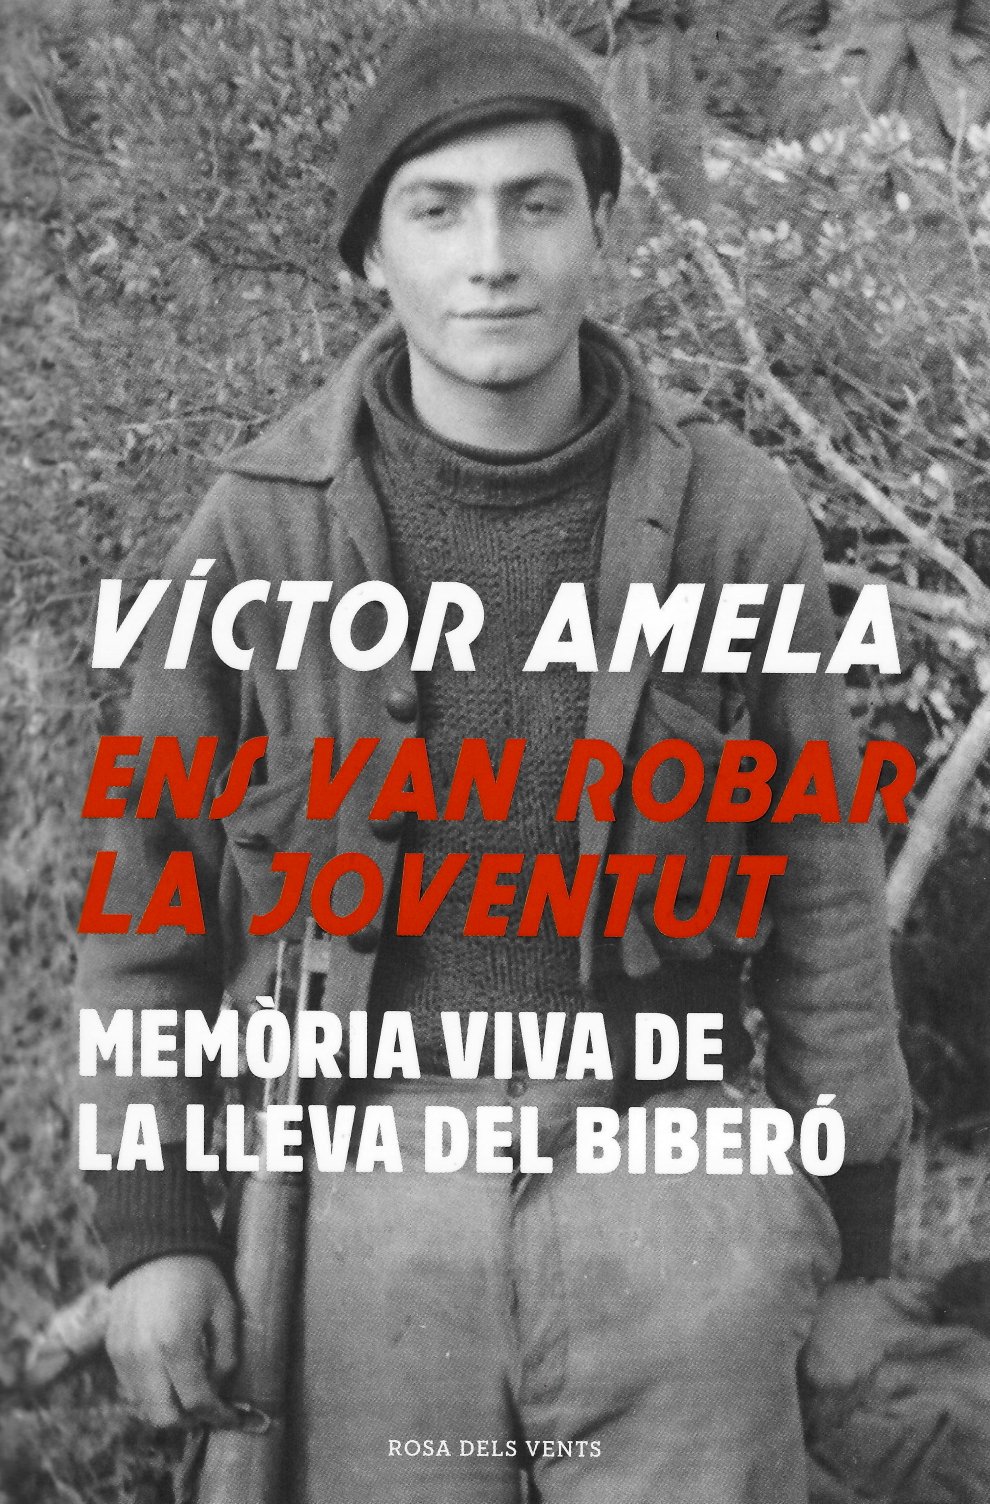 Víctor Amela, 'Ens van robar la joventut'. Rosa dels Vents, 440 p., 19,90 €.